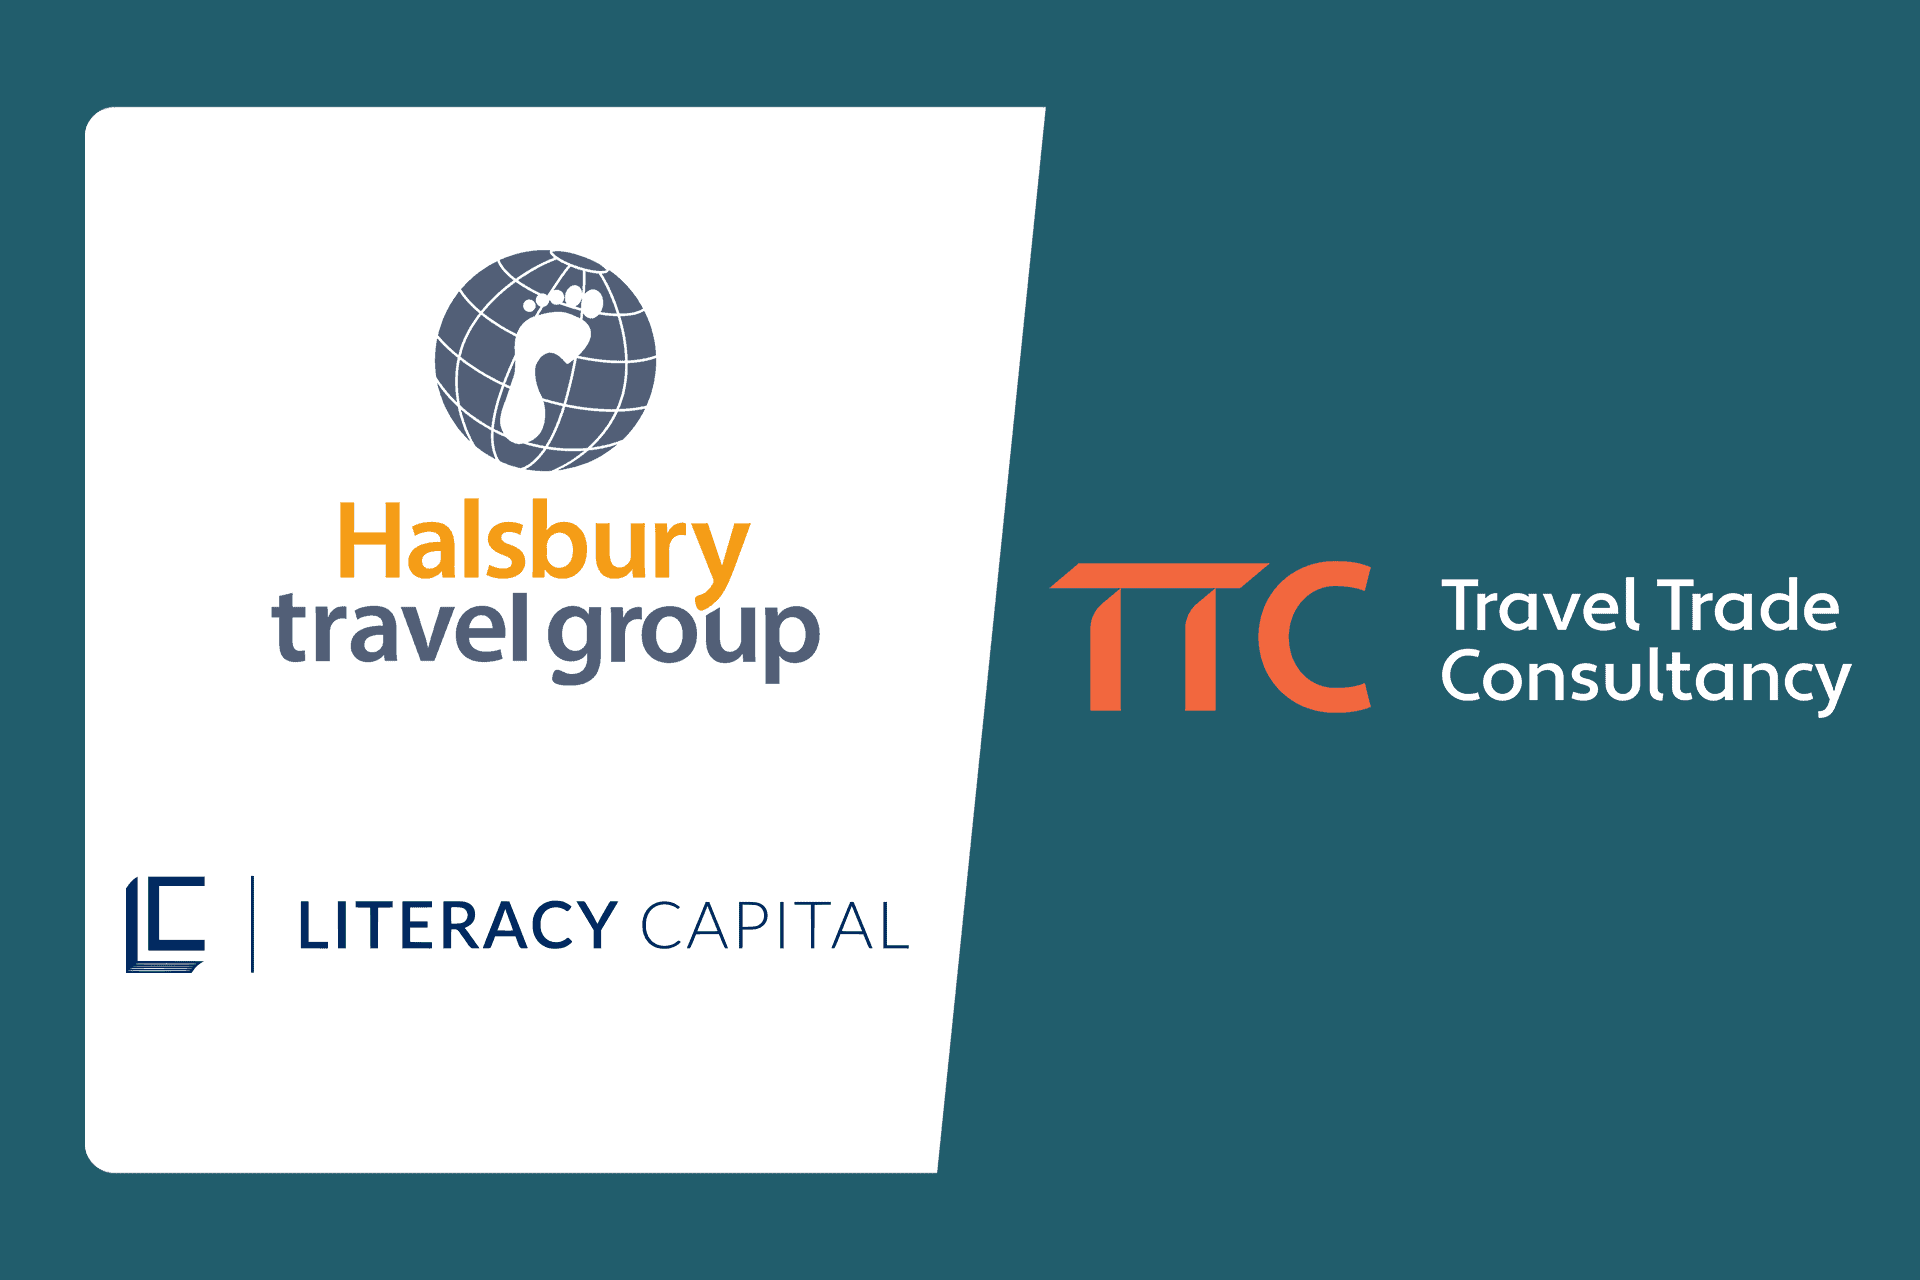 halsbury travel company